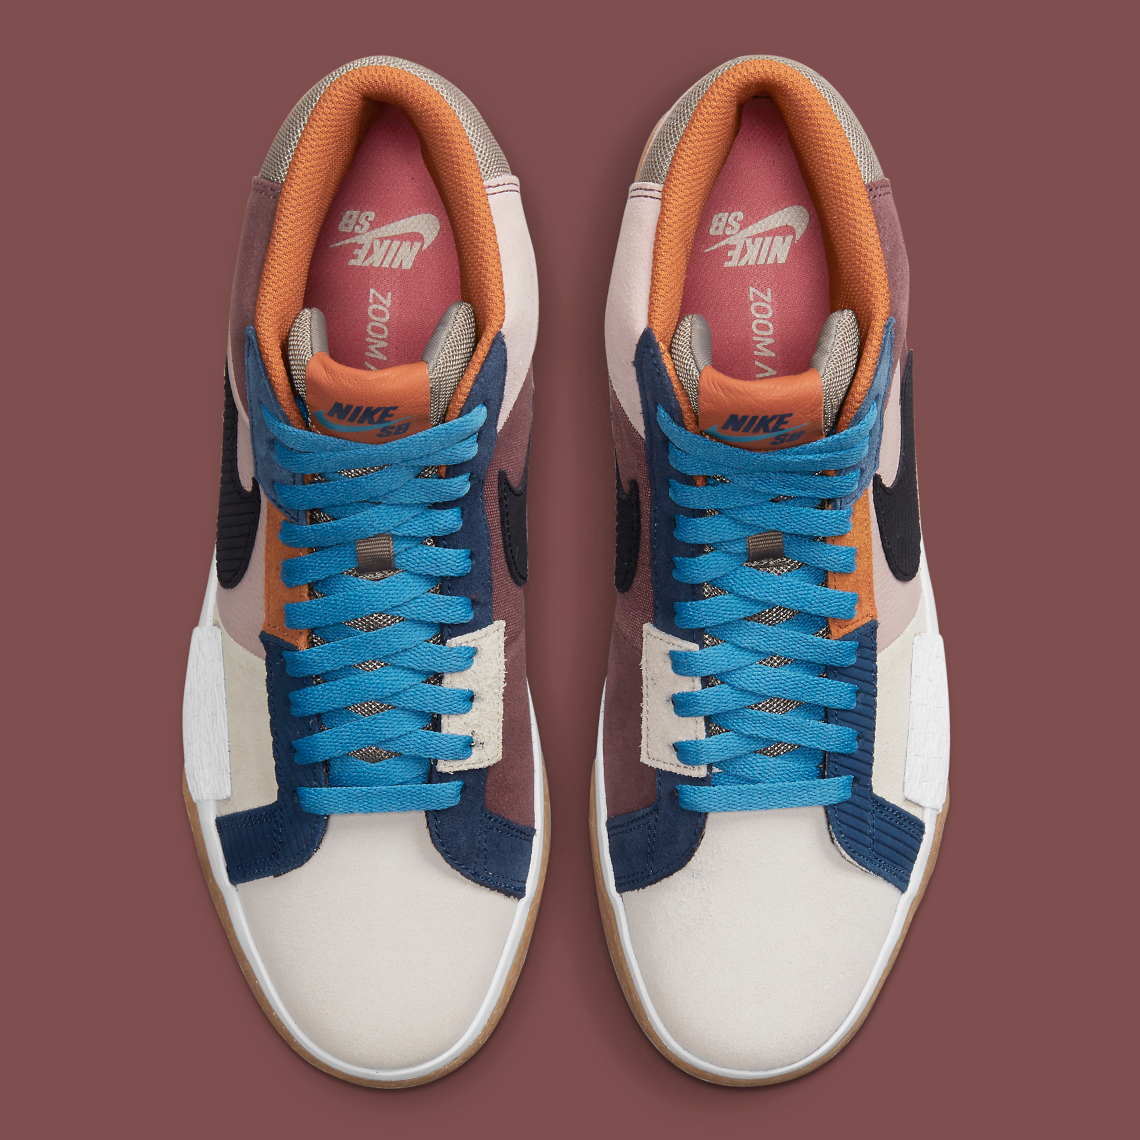 Nike SB Blazer nike sb shoes mid Mid Mosaic DA8854-600 | SneakerNews.com